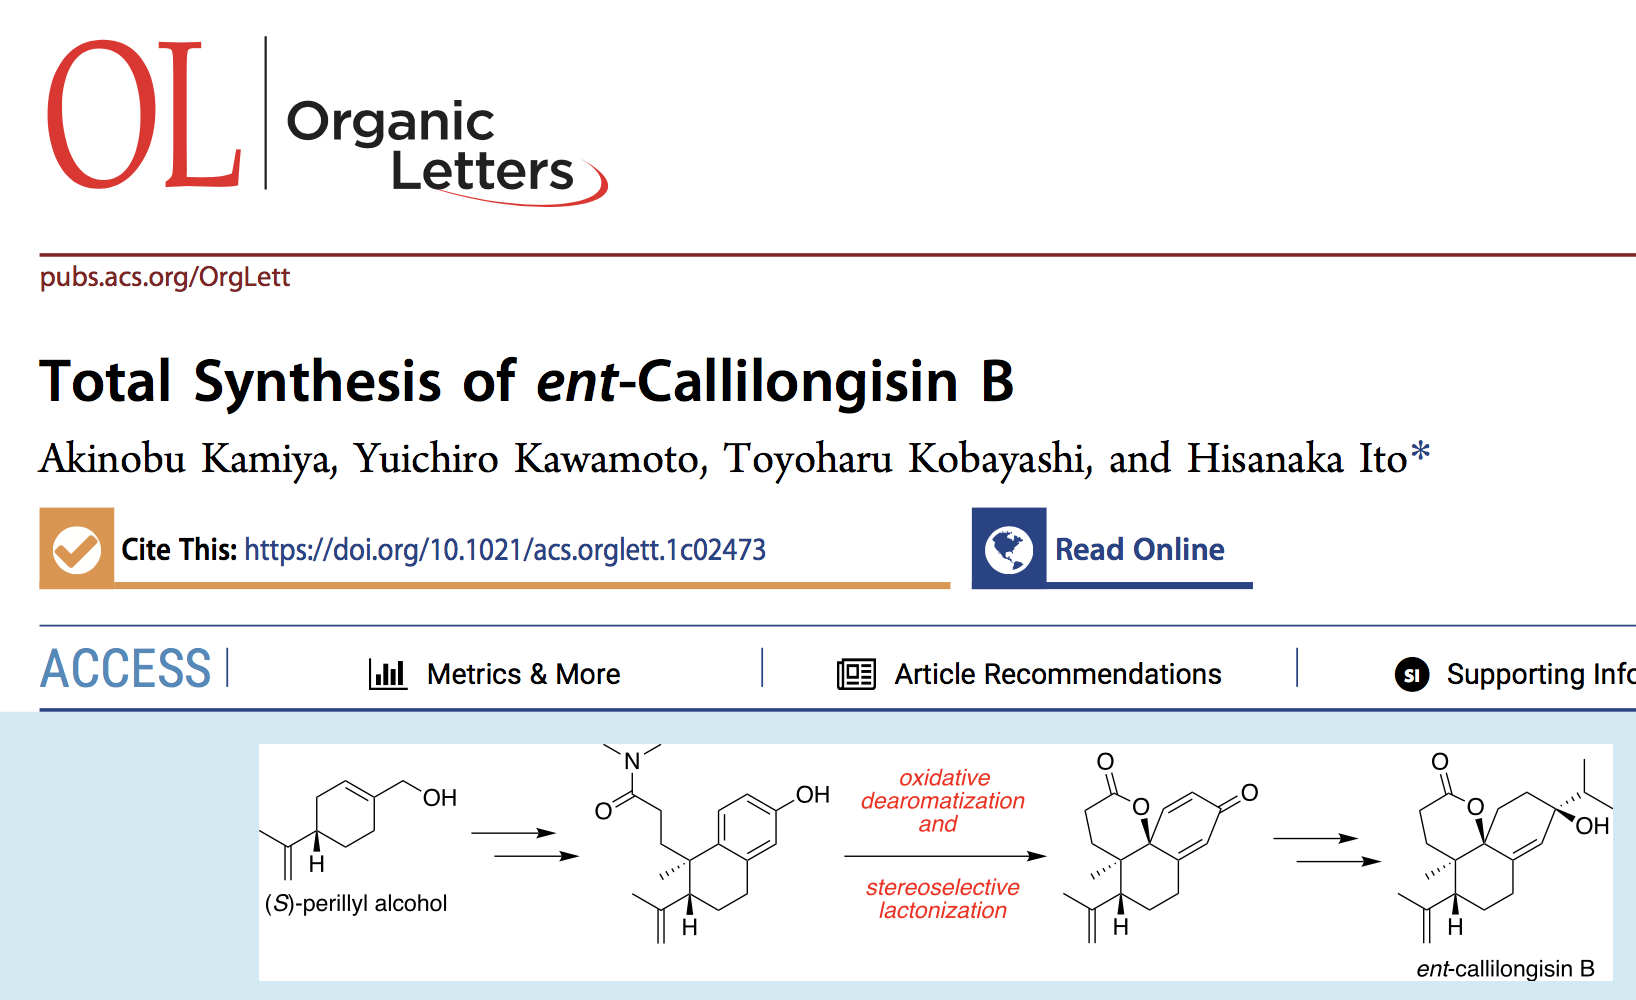 生物有機化学研究室博士課程３年、神谷昭寛さんの論文がアメリカ化学会の雑誌 Organic Letters に掲載されました。